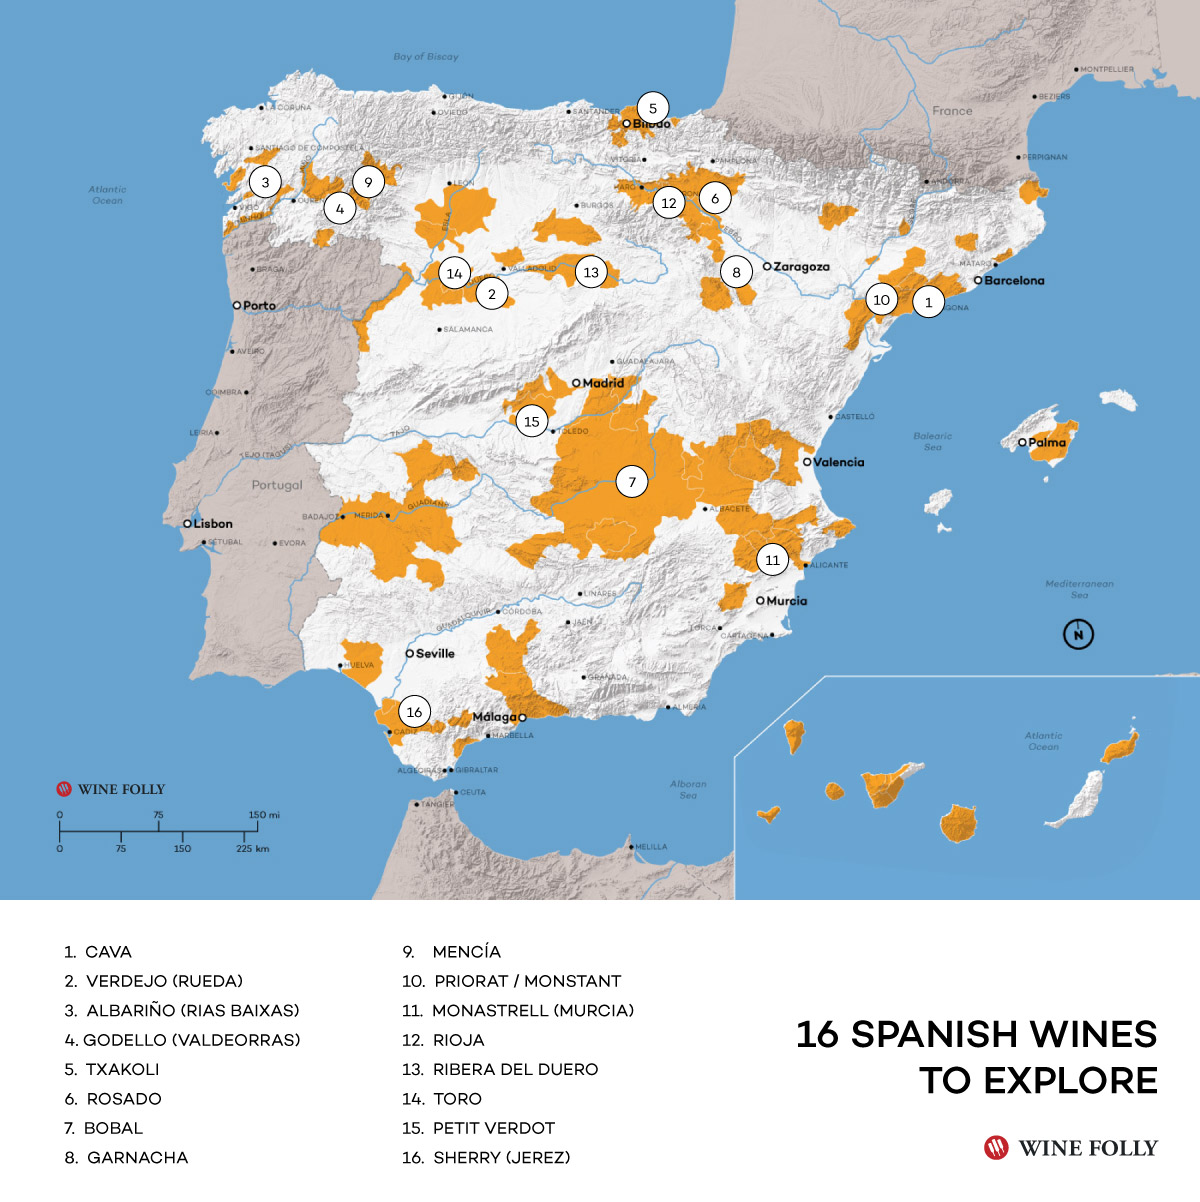 16 Vinos españoles a explorar según WineFolly 1